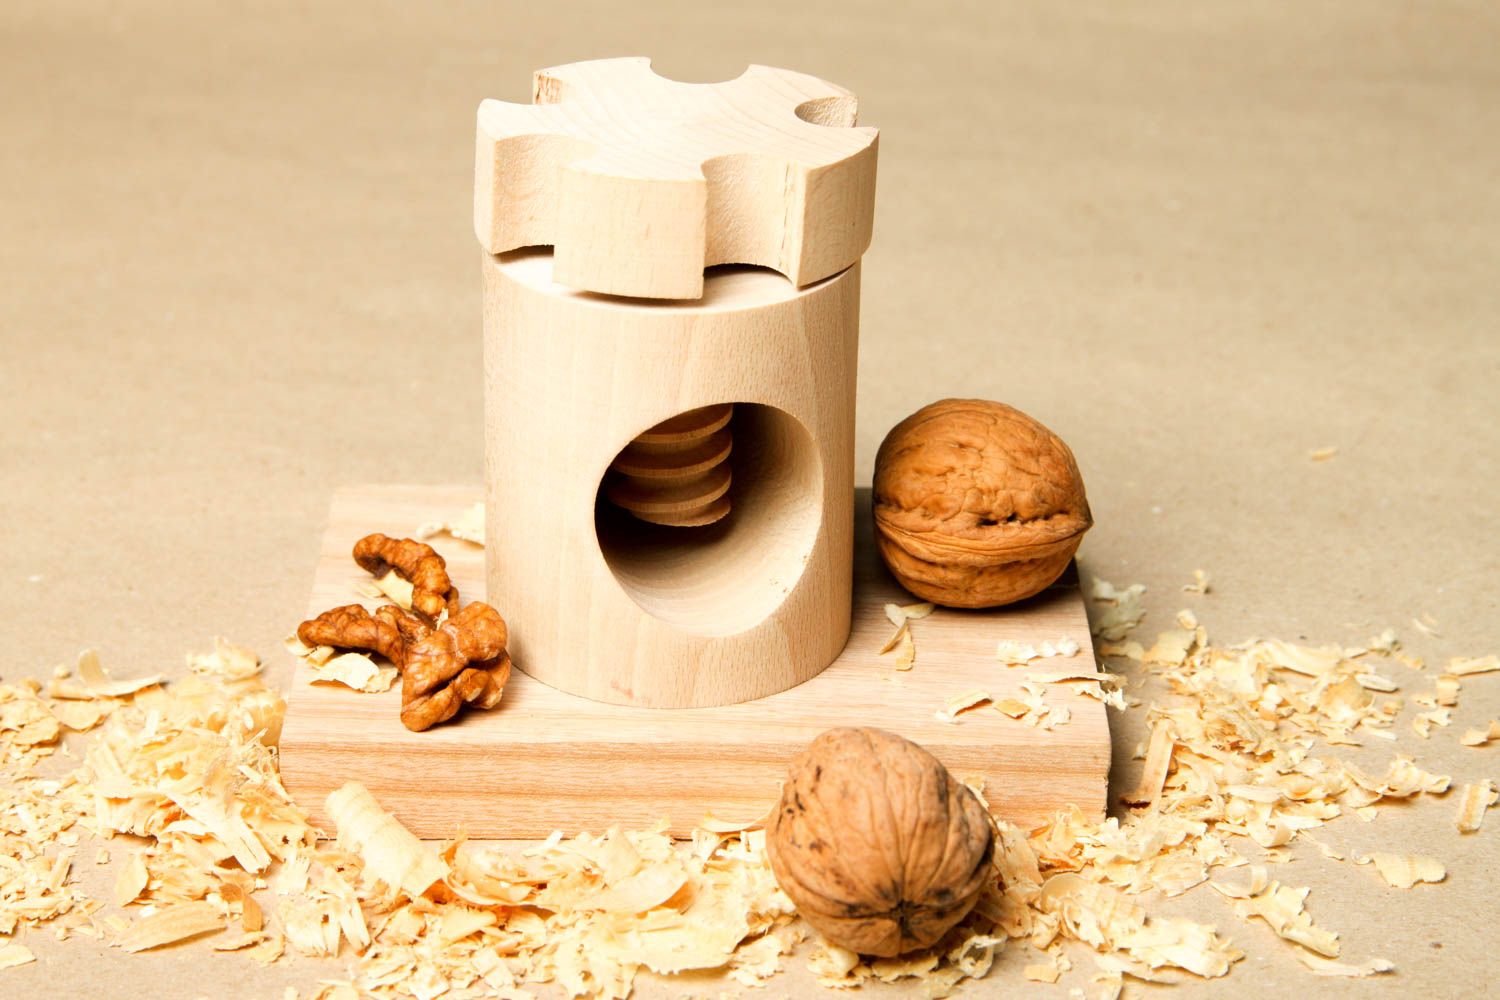 Handmade wooden nutcracker wooden kitchen utensils kitchen tools wooden gifts photo 1